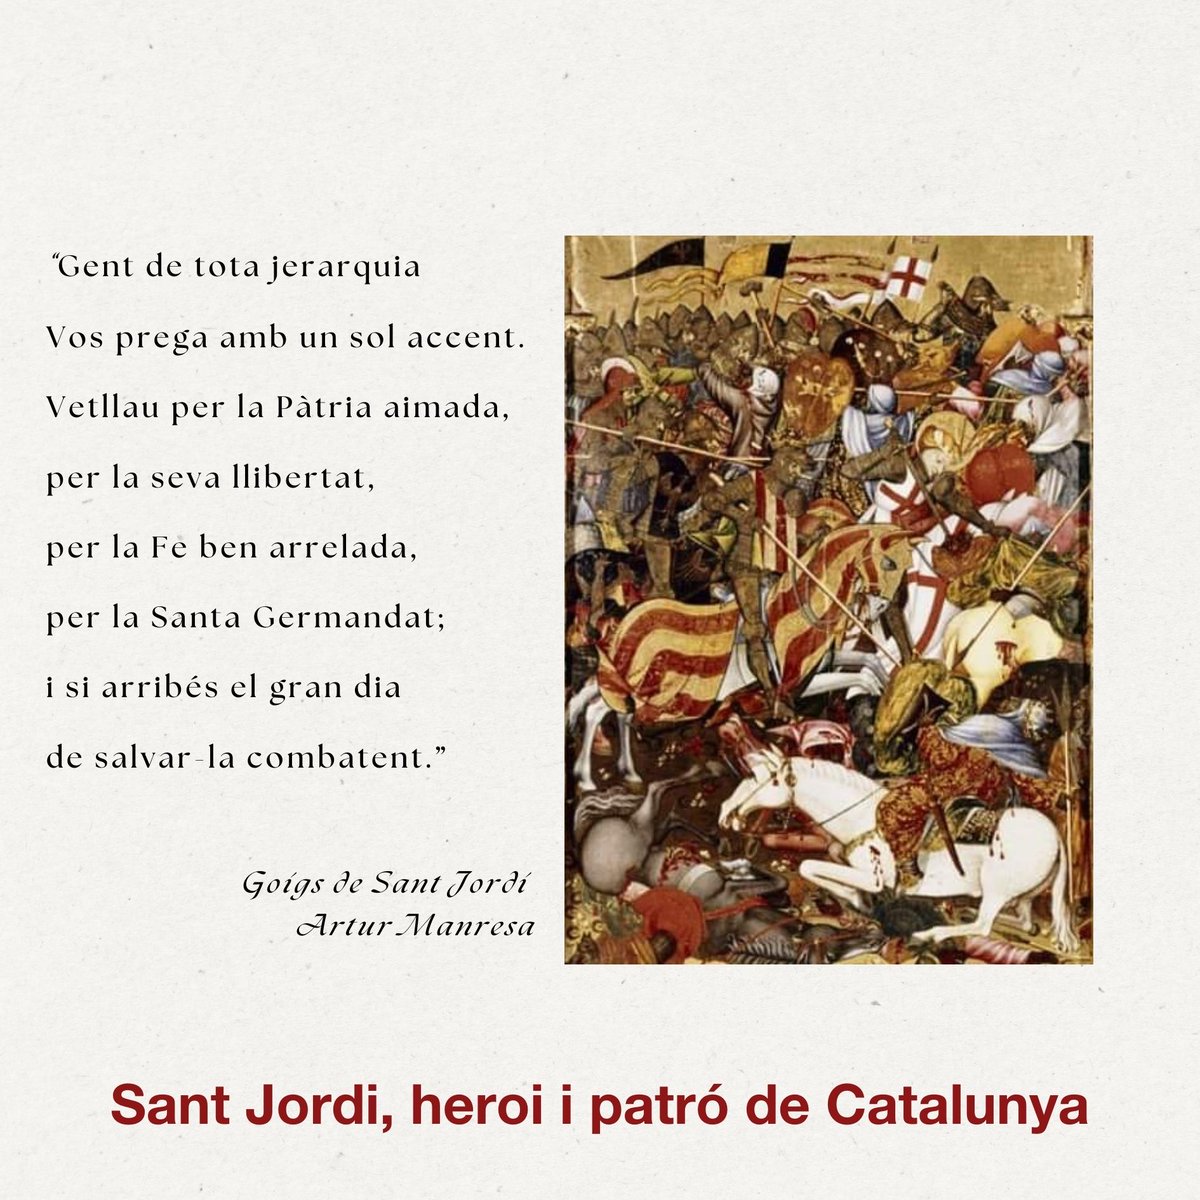 'La batalla del Puig'. El Retaule del Centenar de la Ploma, d'Andreu Marçal de Sax (ca. 1393-1410), està exposat al Museu Victoria & Albert de Londres. Representa la batalla prèvia a la conquesta de València en la qual, segons la tradició, #SantJordi ajudà les tropes de Jaume I.